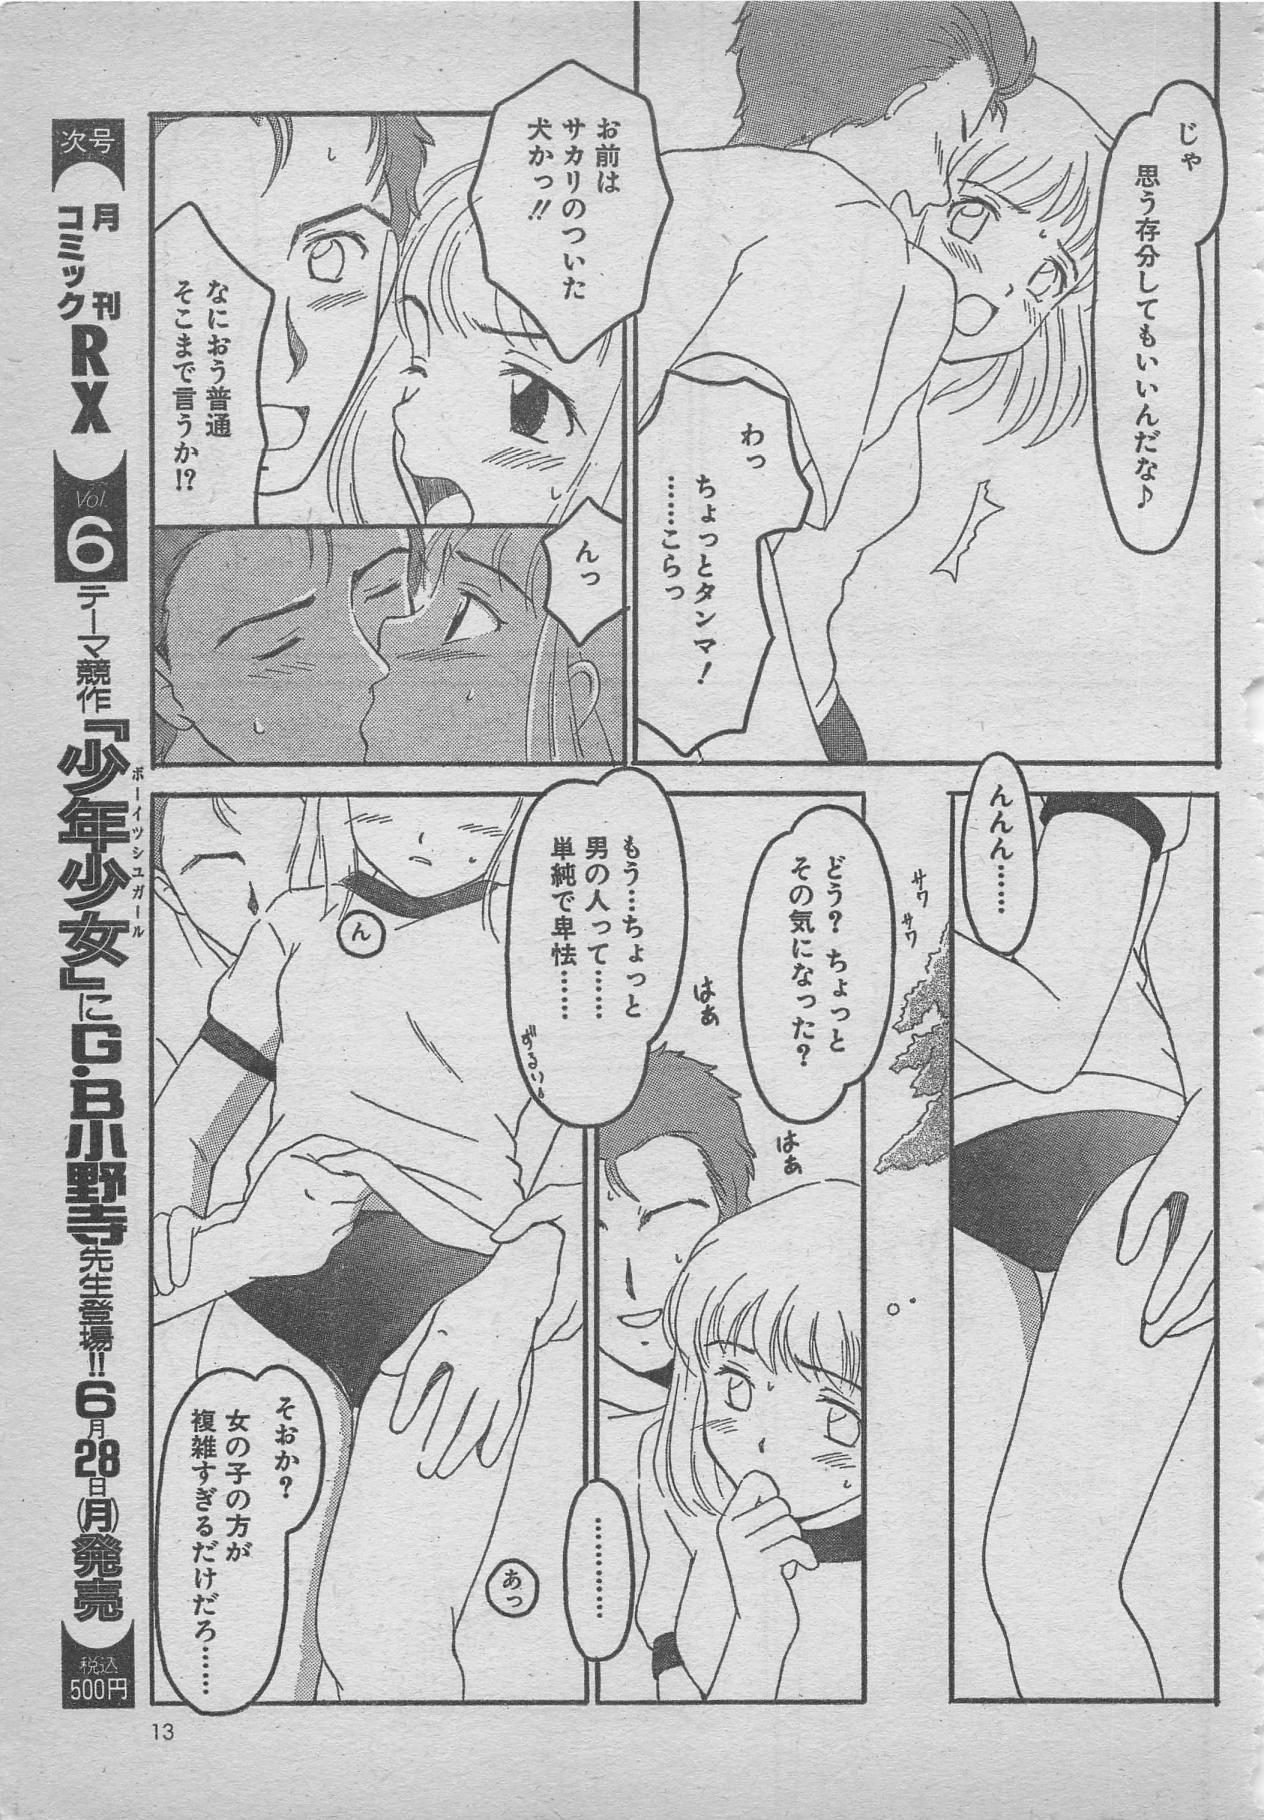 comic RX 1999 vol.5 12